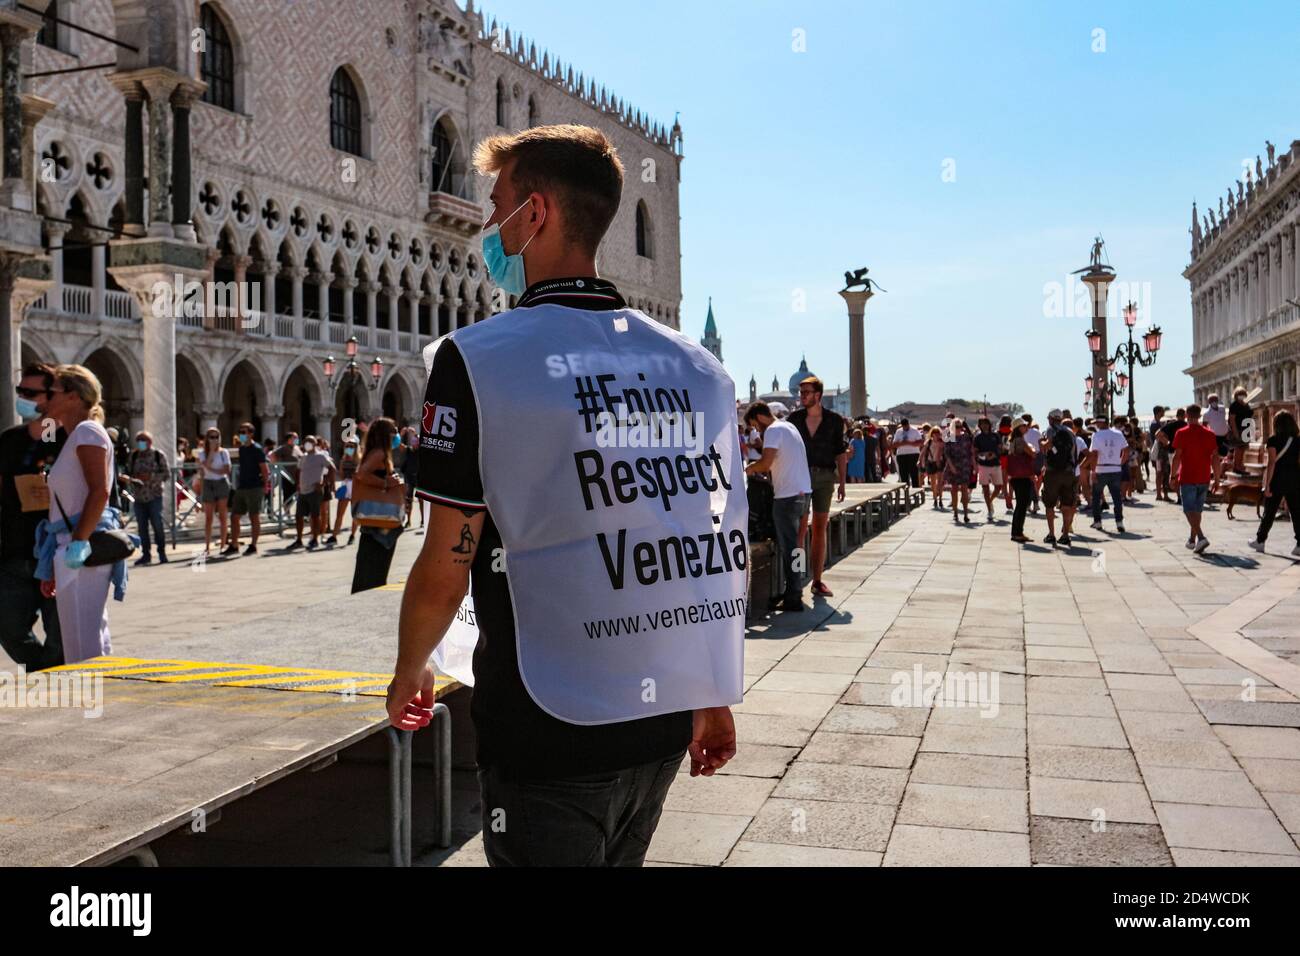 La guardia di RESPECT Venezia in maschera chirurgica rappresenta un turismo responsabile in Piazza San Marco durante la crisi del coronavirus. Foto Stock